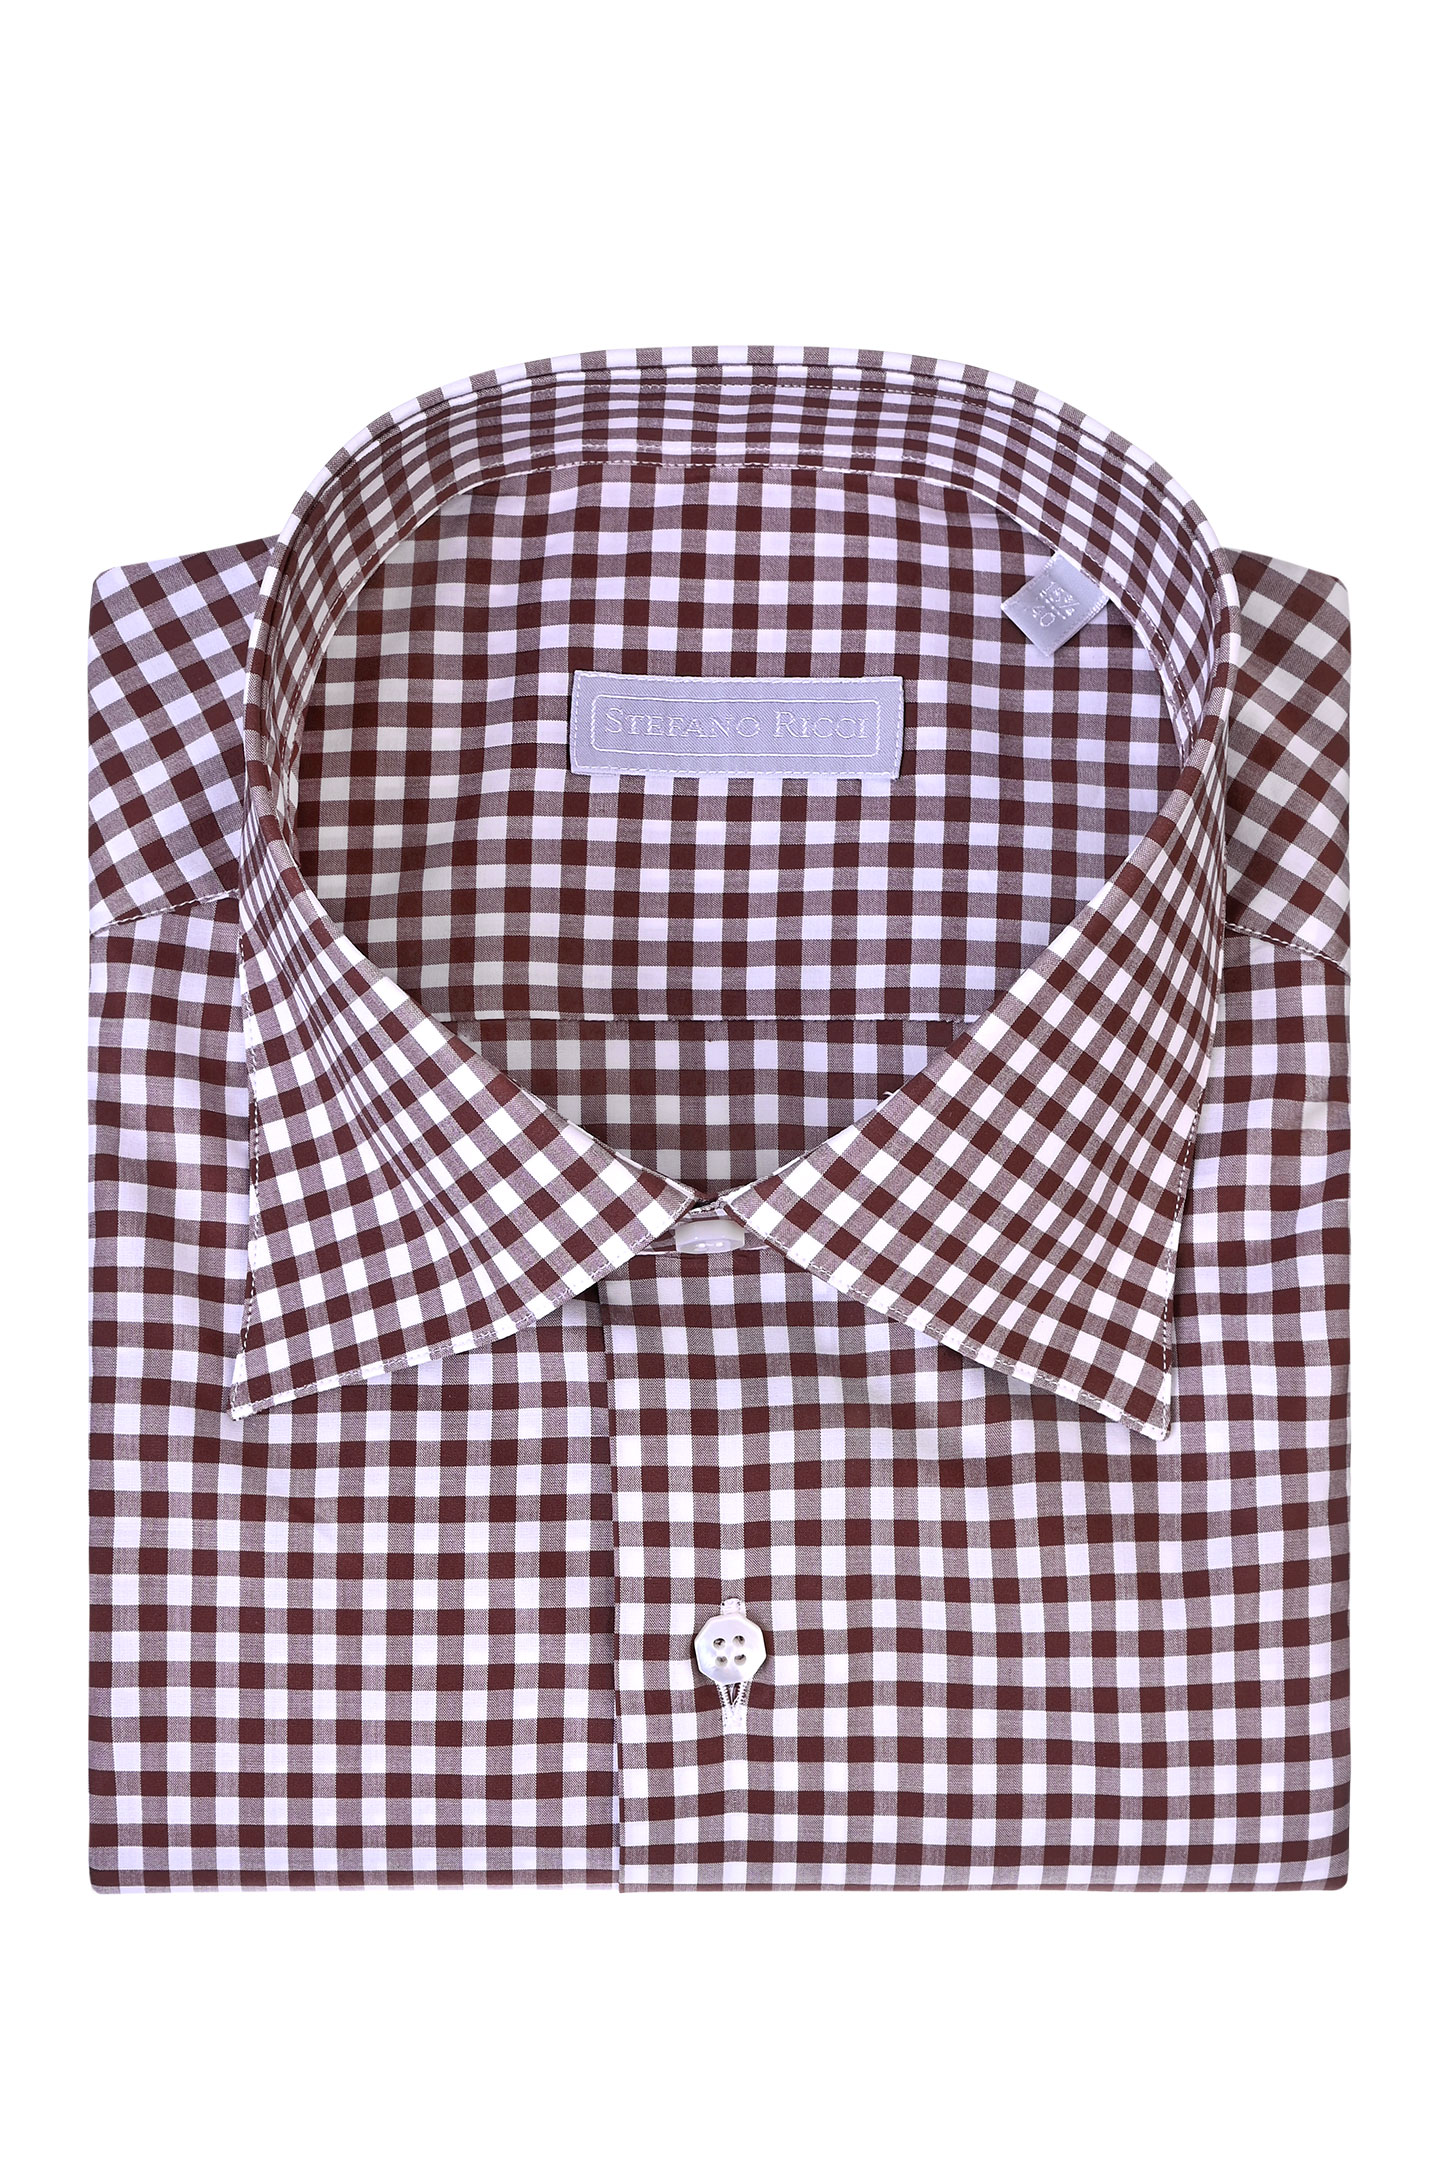 Рубашка STEFANO RICCI MC006127 L2209, цвет: Коричневый, Мужской